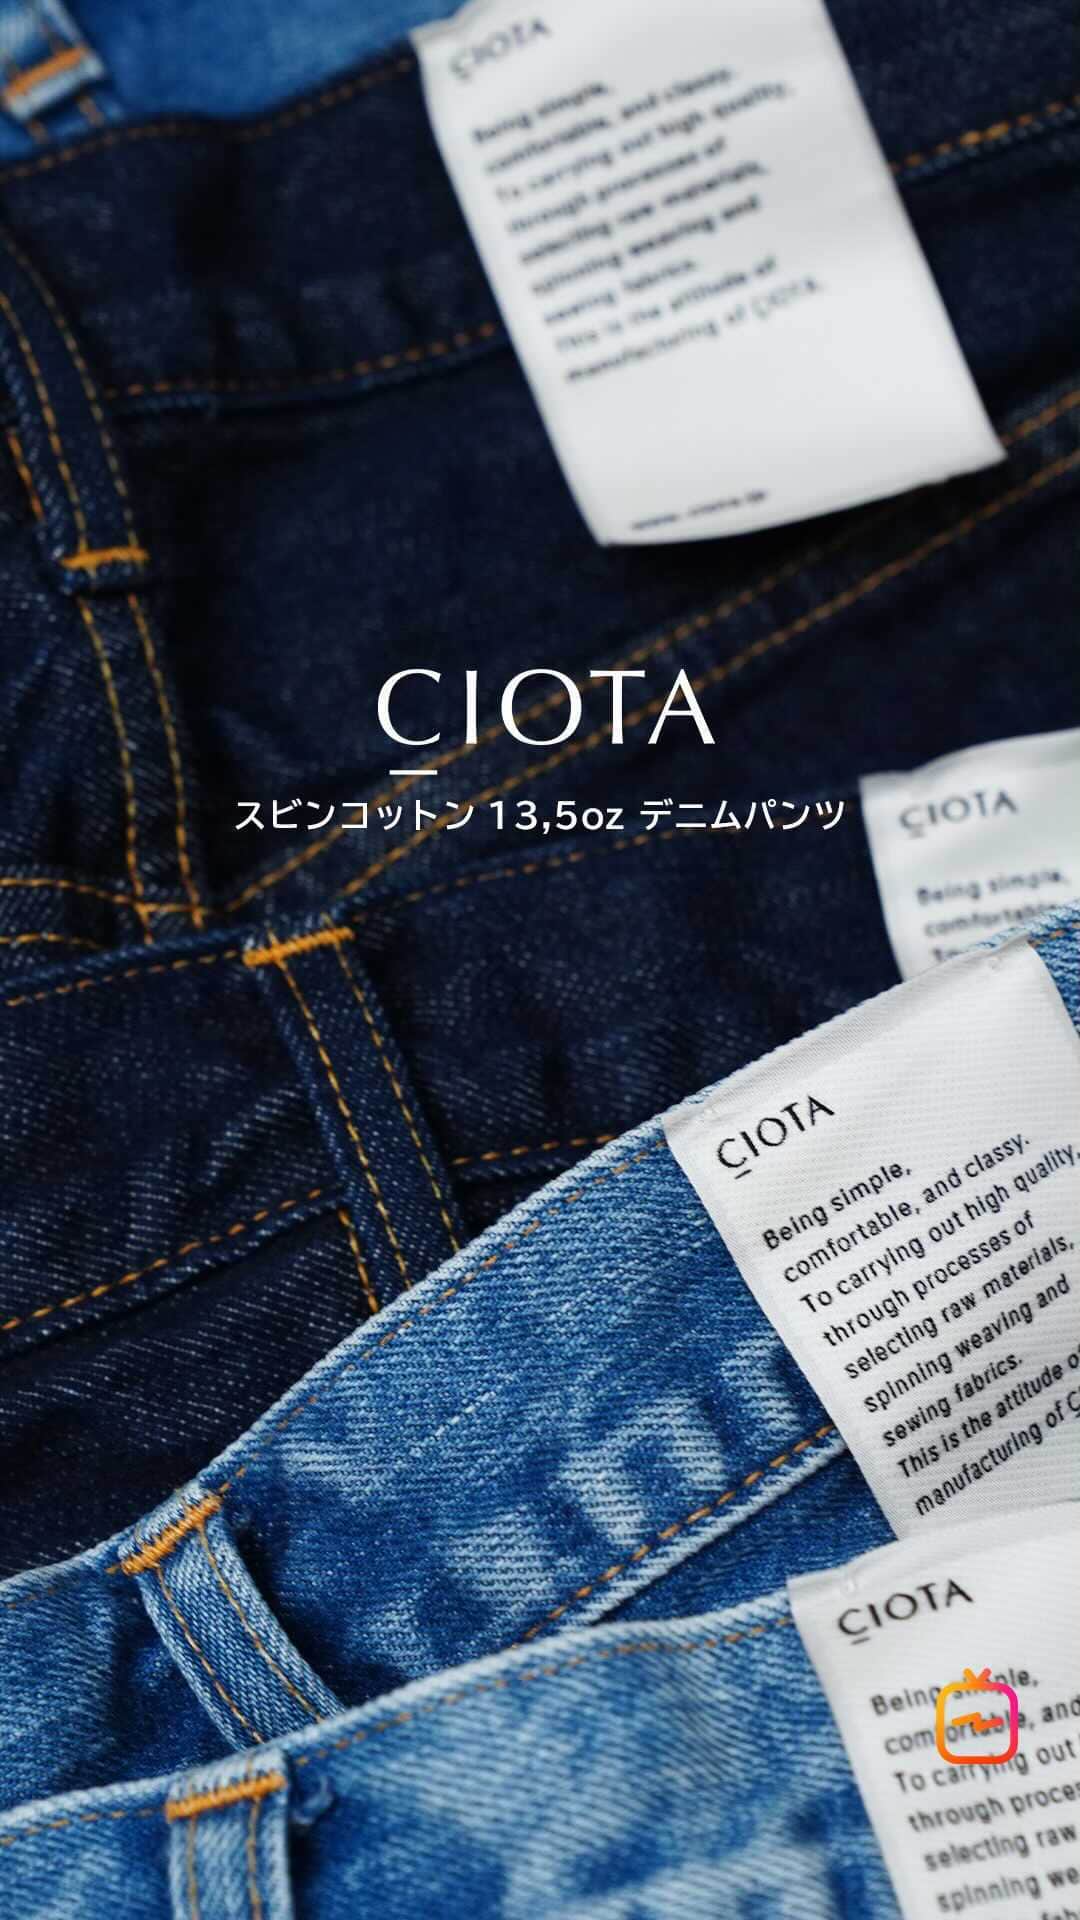 ARKnetsのインスタグラム：「・﻿ ARKnets IGTV 〜vol.49 ・ 今回は待ちに待っていた方も多い、CIOTAのご紹介になります。 CIOTAの中でも人気の高いデニムパンツを3型ピックアップして、穿きながらシルエットなどの違いをご説明します。 今回は特別に着用モデルもご用意いたしました。  CIOTAは、岡山に本拠を構える縫製工場・生地製造販売会社、株式会社シオタが立ち上げたアパレルブランドです。 CIOTAの特徴は、原料の選別から、生地のデザイン、生地織り、洋服のデザイン、縫製仕様の考案、縫製まで、洋服作りにおけるすべての工程を自社で行っております  << CIOTA商品一覧ページ >>﻿ https://bit.ly/38sNJ1t  << コーディネートアイテム一覧 >> ﻿ PANTS : CIOTA ITEM：ブラック スビンコットン 13,5oz スリムデニム https://bit.ly/3hVCdyI  PANTS : CIOTA ITEM：インディゴ スビンコットン 13,5oz テーパードデニム https://bit.ly/3s596xI  PANTS : CIOTA ITEM：本藍スビンコットン 13,5oz ストレートデニム https://bit.ly/3qgg9SH  PARKA : WP ITEM：WOLF PACK CREW2 PULL PARKA https://bit.ly/3s5KQvj  TOPS :WP ITEM：WP×CAMBER WORLD GREATS B3 L/Tee https://bit.ly/3q4Tbha  TOPS :WP ITEM：WP×CAMBER WOLF PACK CREW L/Tee https://bit.ly/39eZA2u  MASK : WP ITEM：ROCK STEADY MASK https://bit.ly/3hYaLk2  SHOES : SPALWART ITEM：MARATHON MESH https://bit.ly/3ouMdlb  << ARKnets Official Instagram >>﻿ @arknets_official﻿ ﻿ << ARKnets Official HP >>﻿ https://www.arknets.co.jp/ ﻿ << ARKnets CEO Blog >>﻿ https://ameblo.jp/arknets ﻿ #ciota #シオタ #デニム #デニムパンツ #suvincotton #スビンコットン#arknets #museum_ark #reark #宇都宮 #高崎 #越谷レイクタウン #styling #スタイリング #fashion #ファッション #coodinate #コーディネイト #メンズファッション #2021ss #21ss」